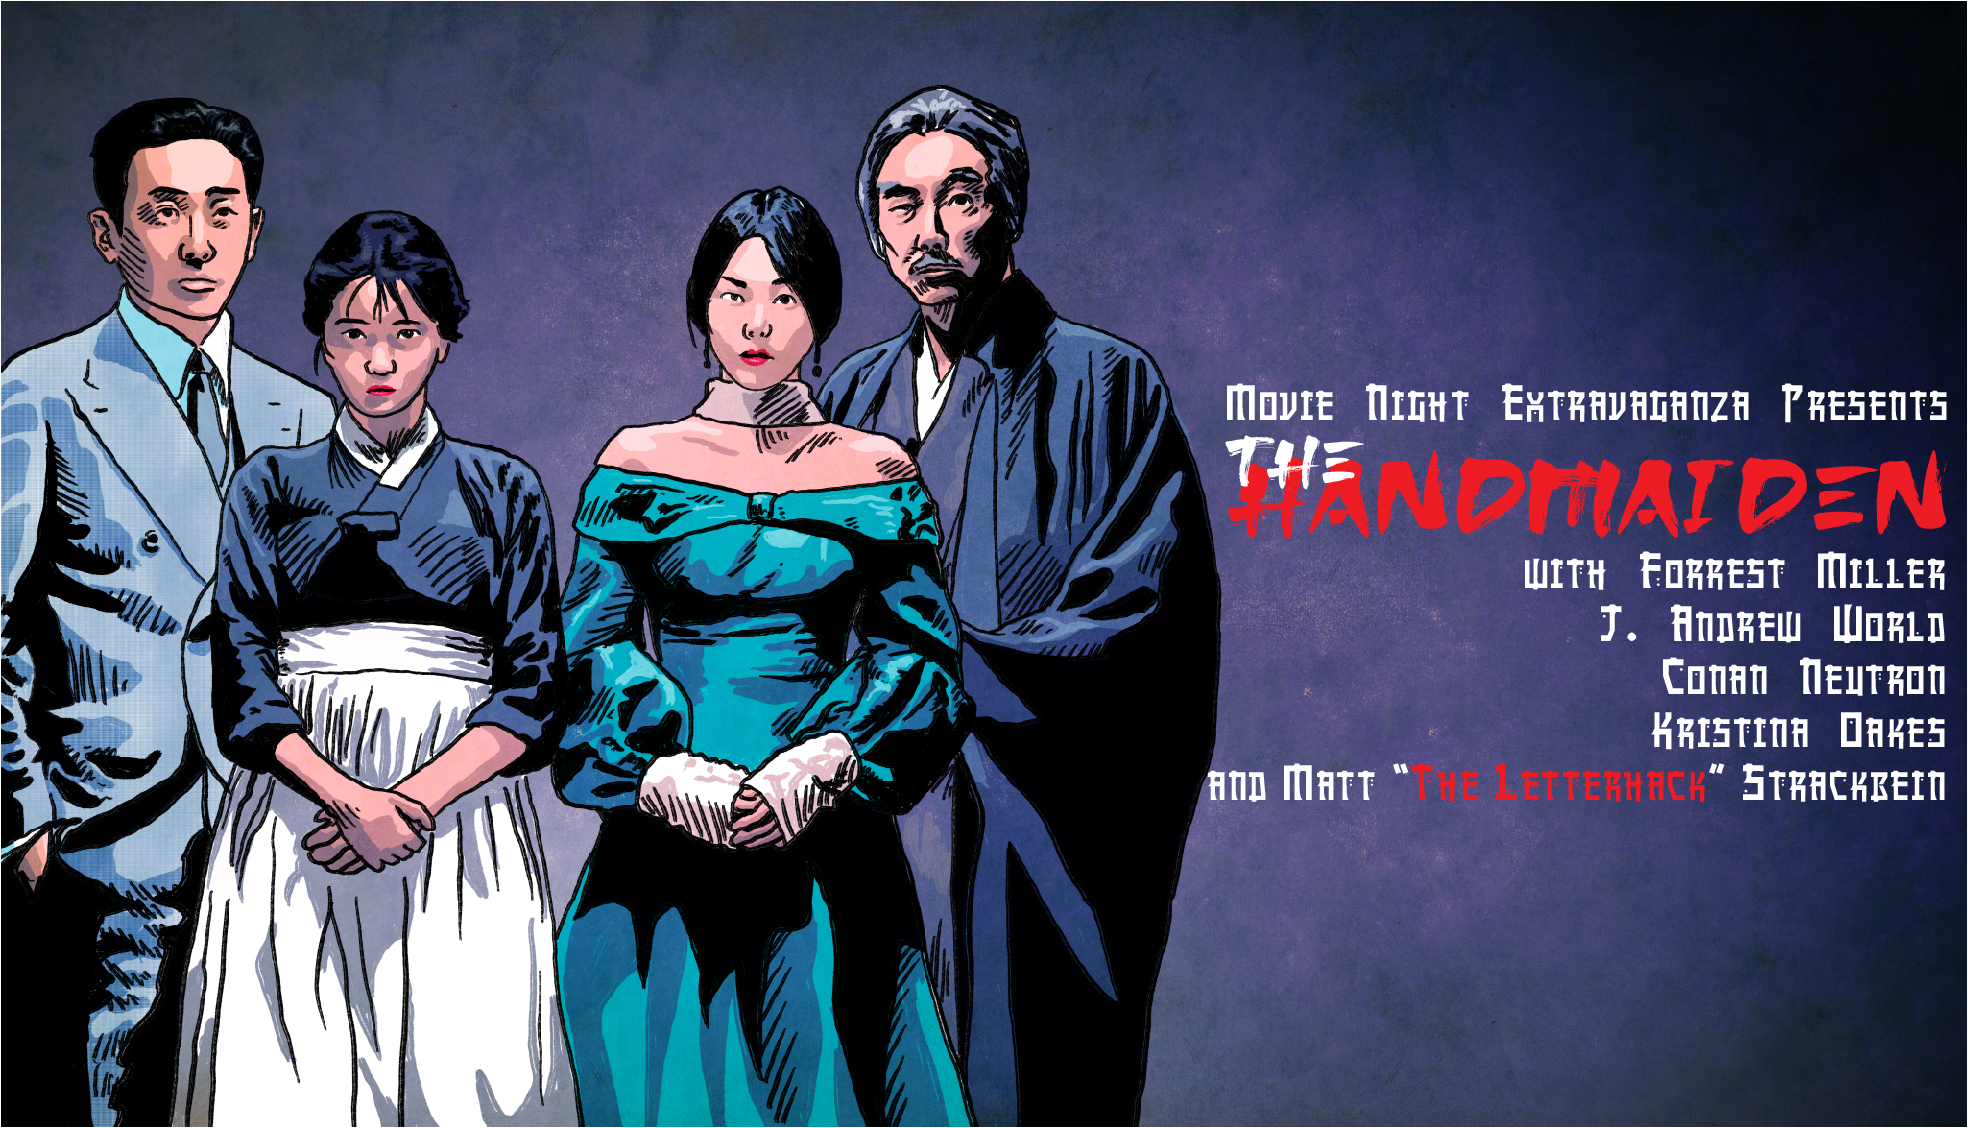 Episode 160: The Handmaiden with Matt Strackbein